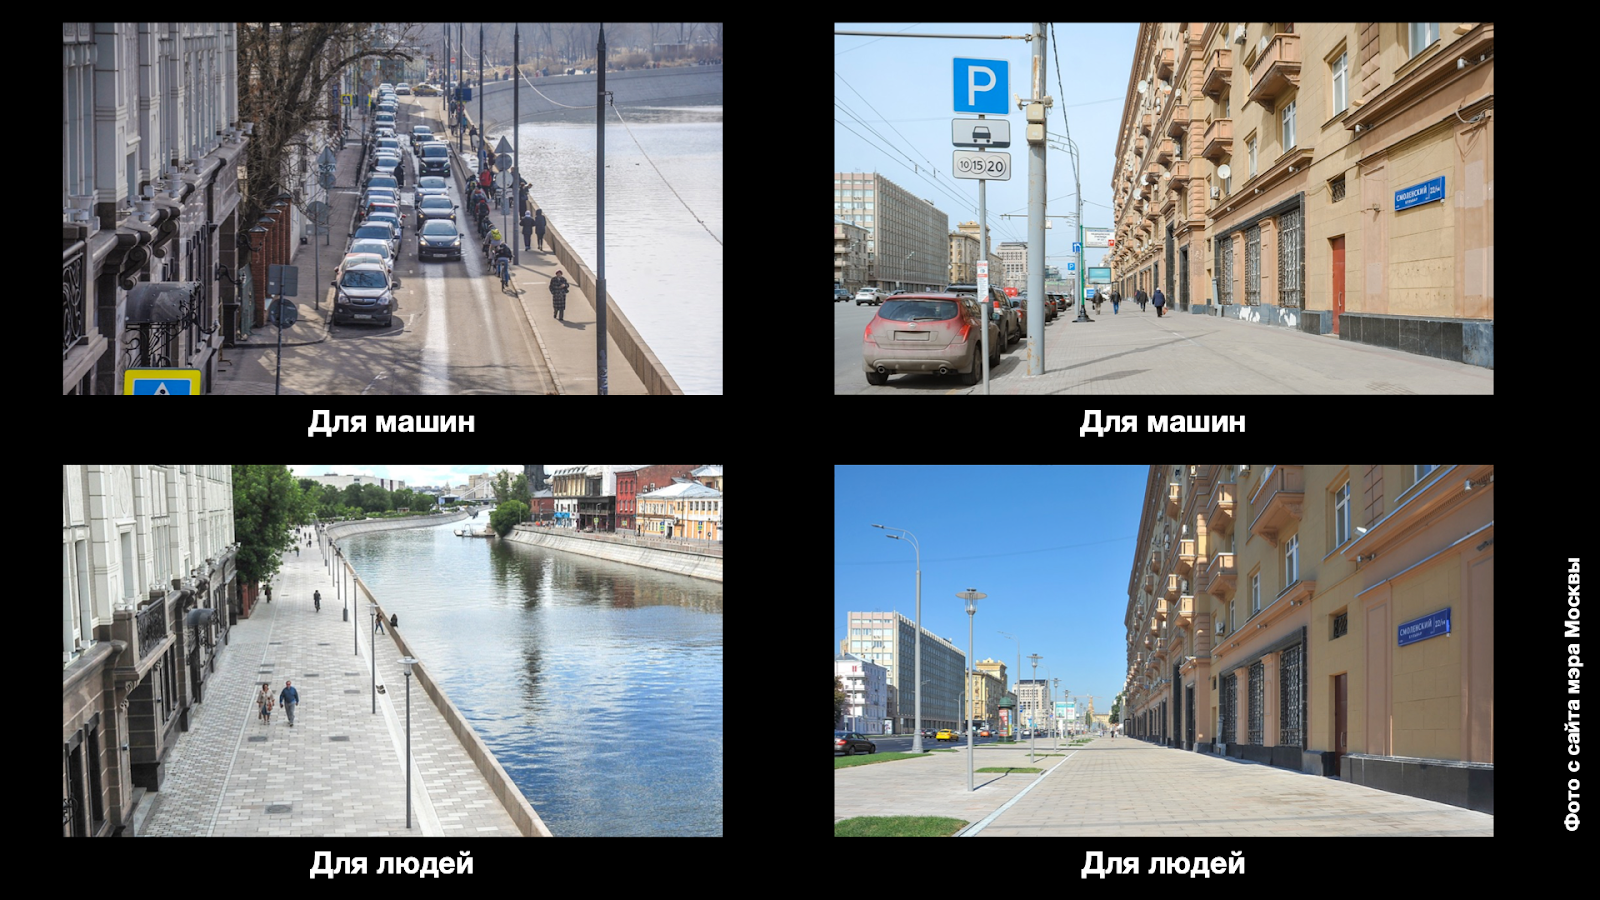 Москва, Якиманская набережная, Смоленский бульвар (справа): до благоустройства и после